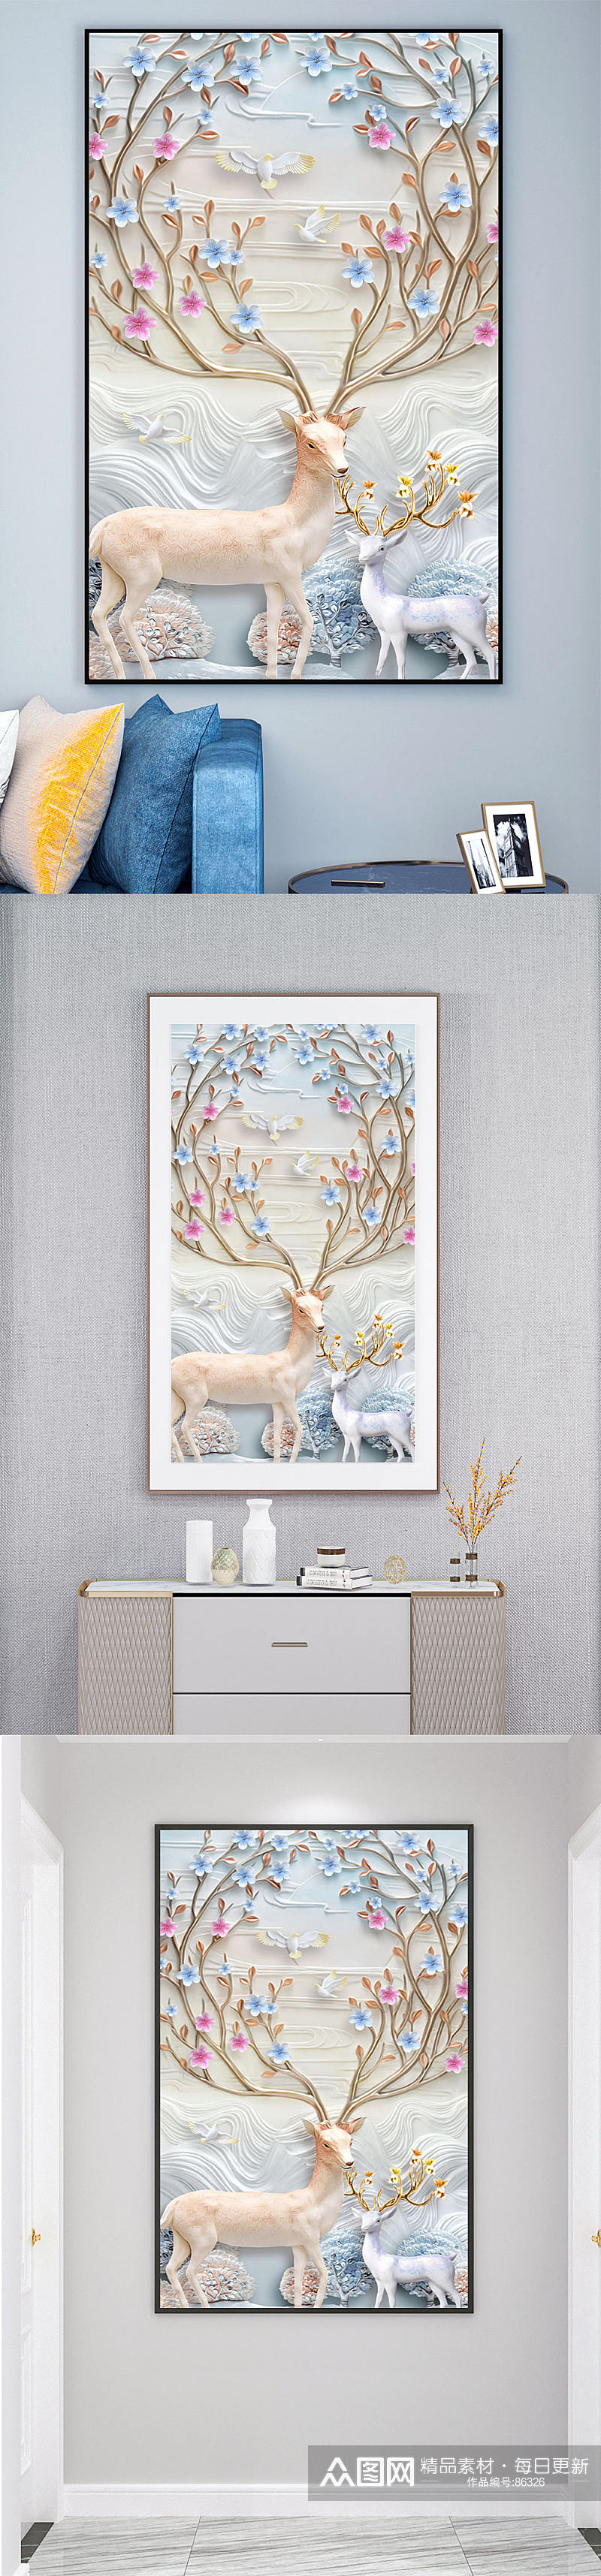 鹿动物高端轻奢装饰画素材